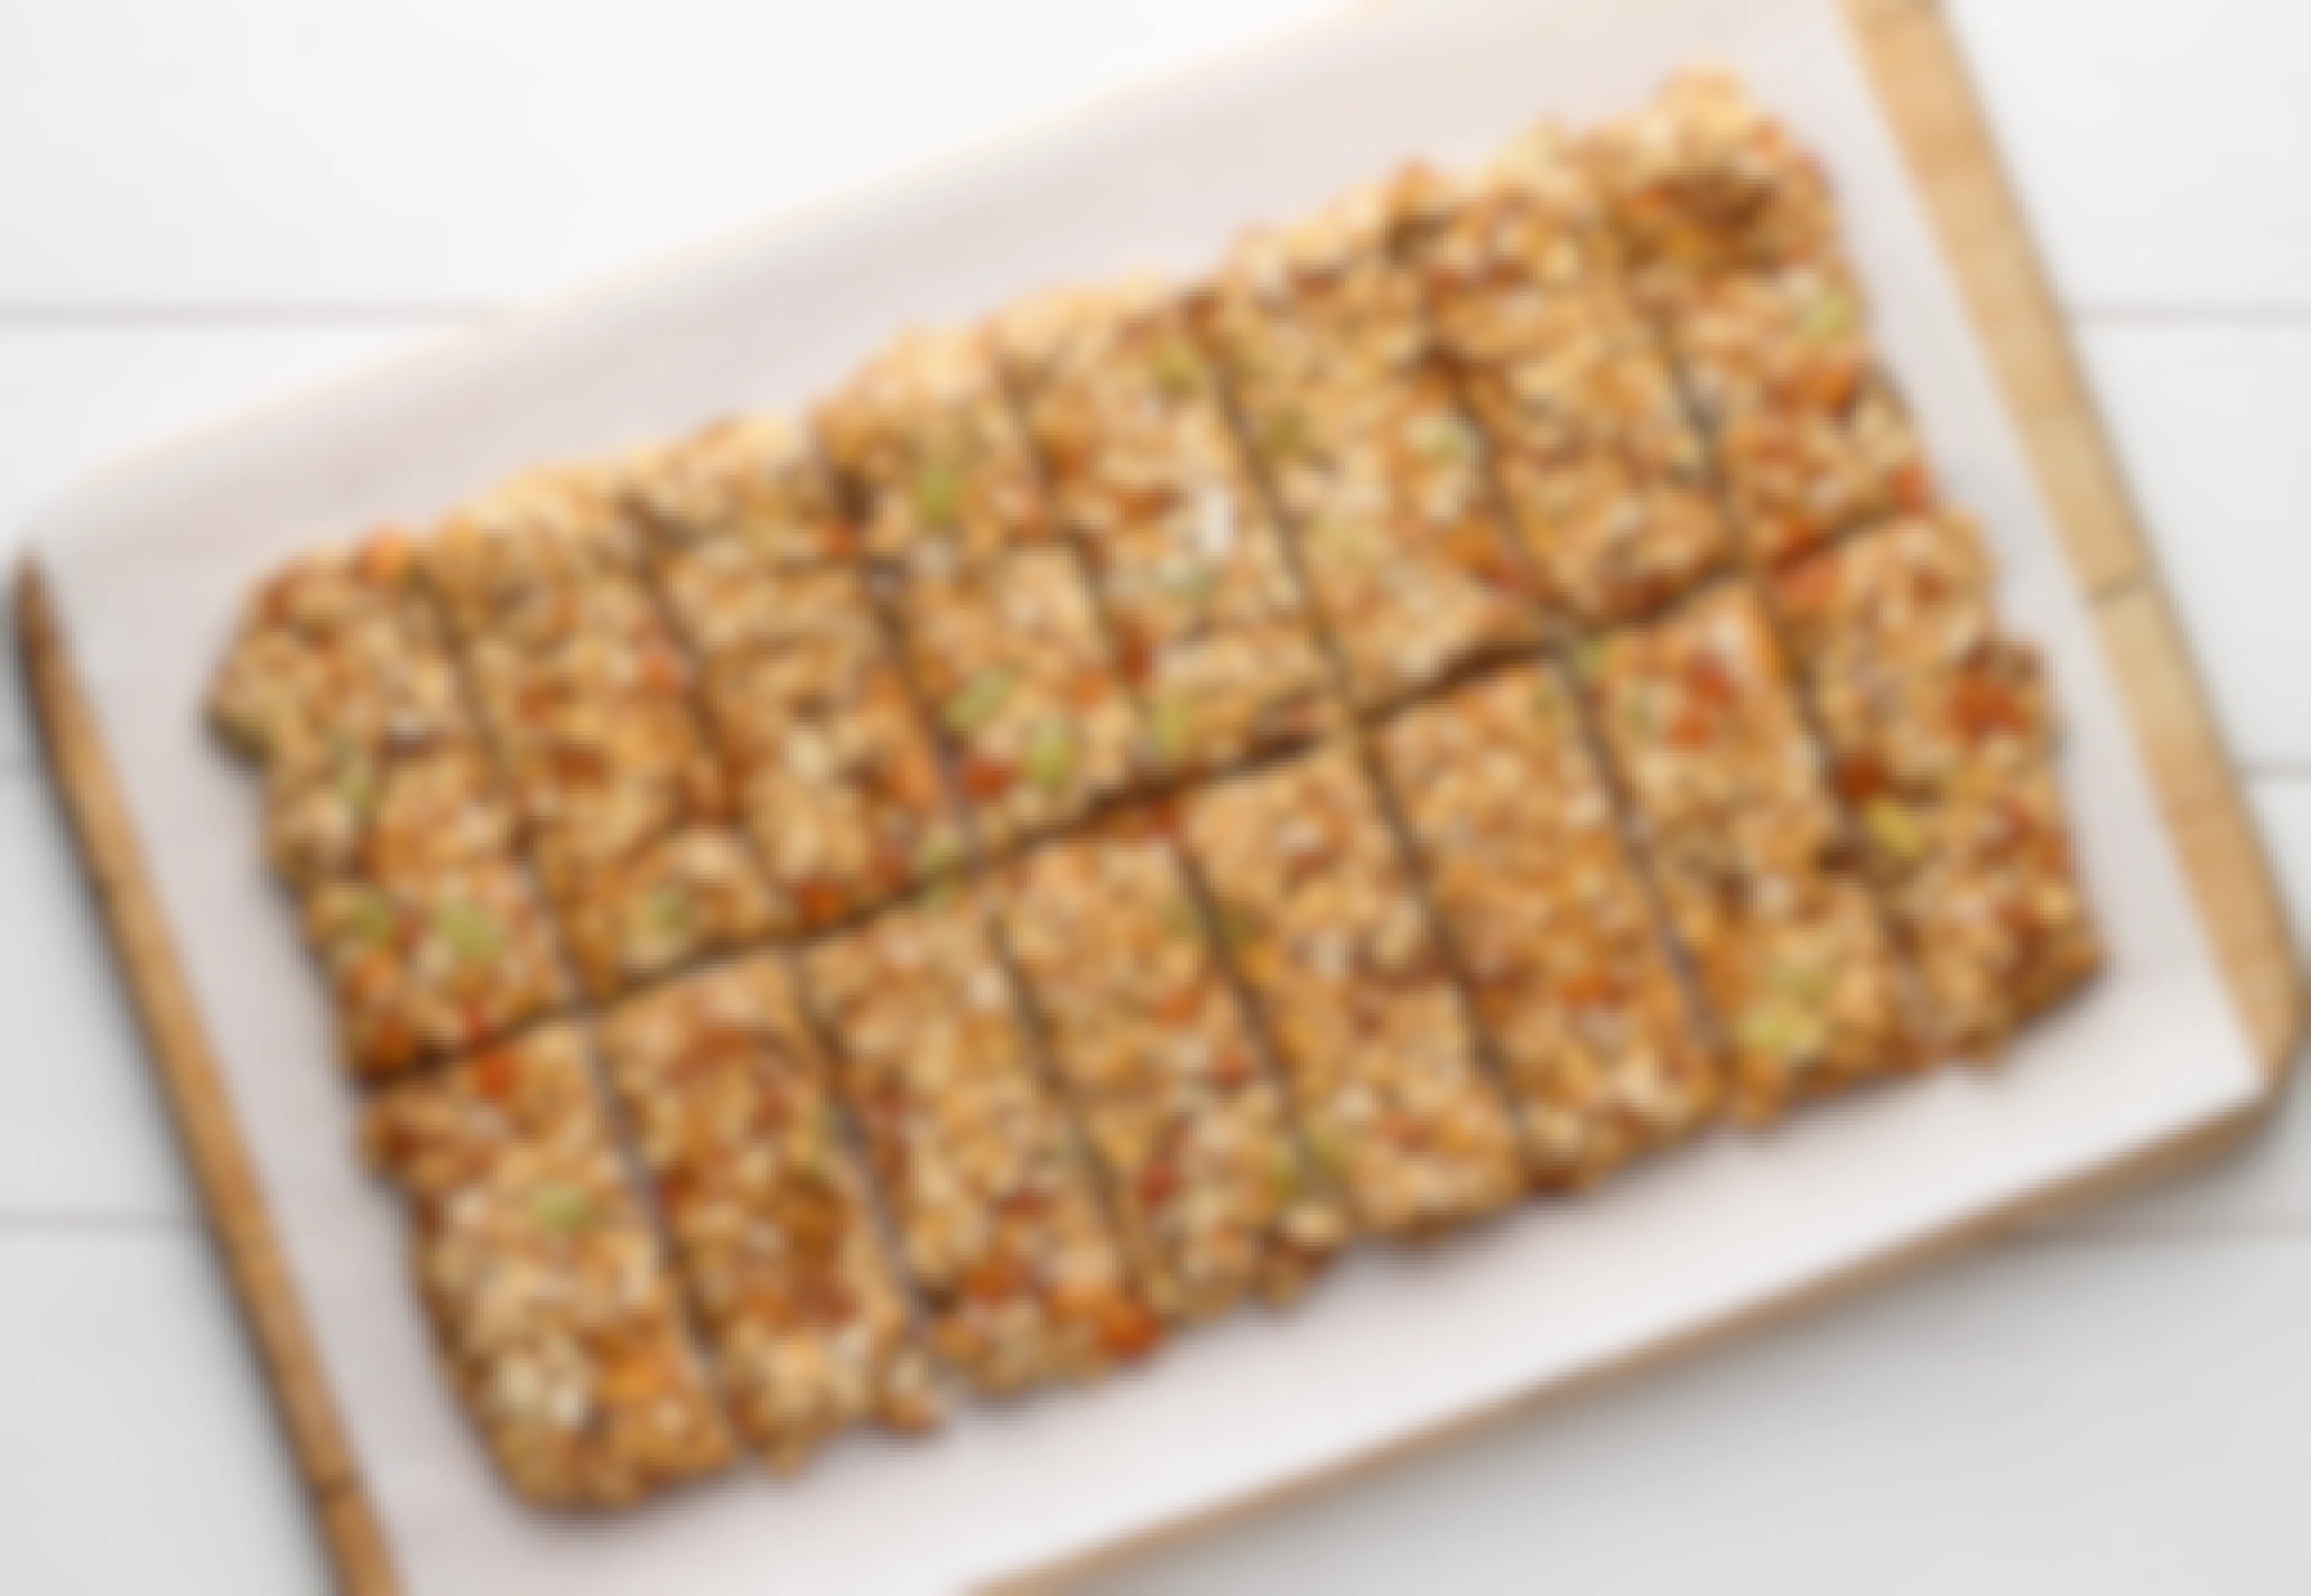 A tray of homemade granola bars